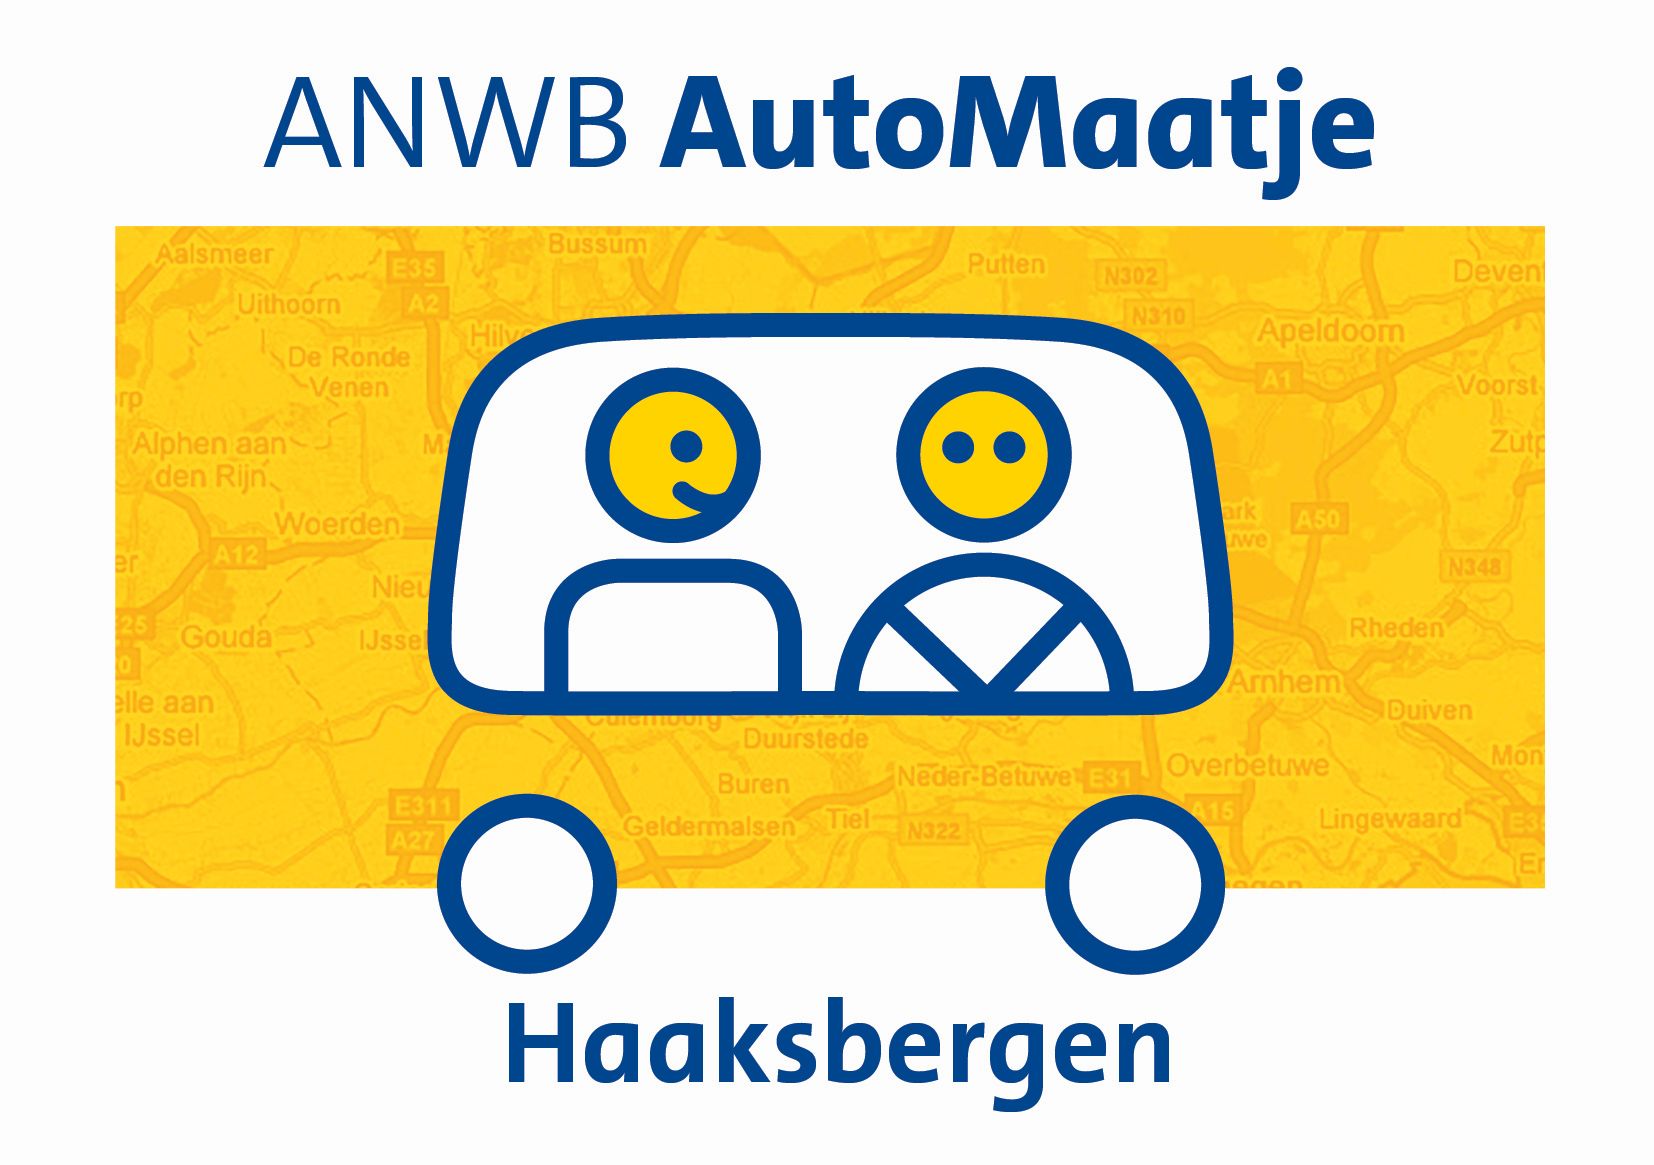 ANWB AutoMaatje Haaksbergen (logo)